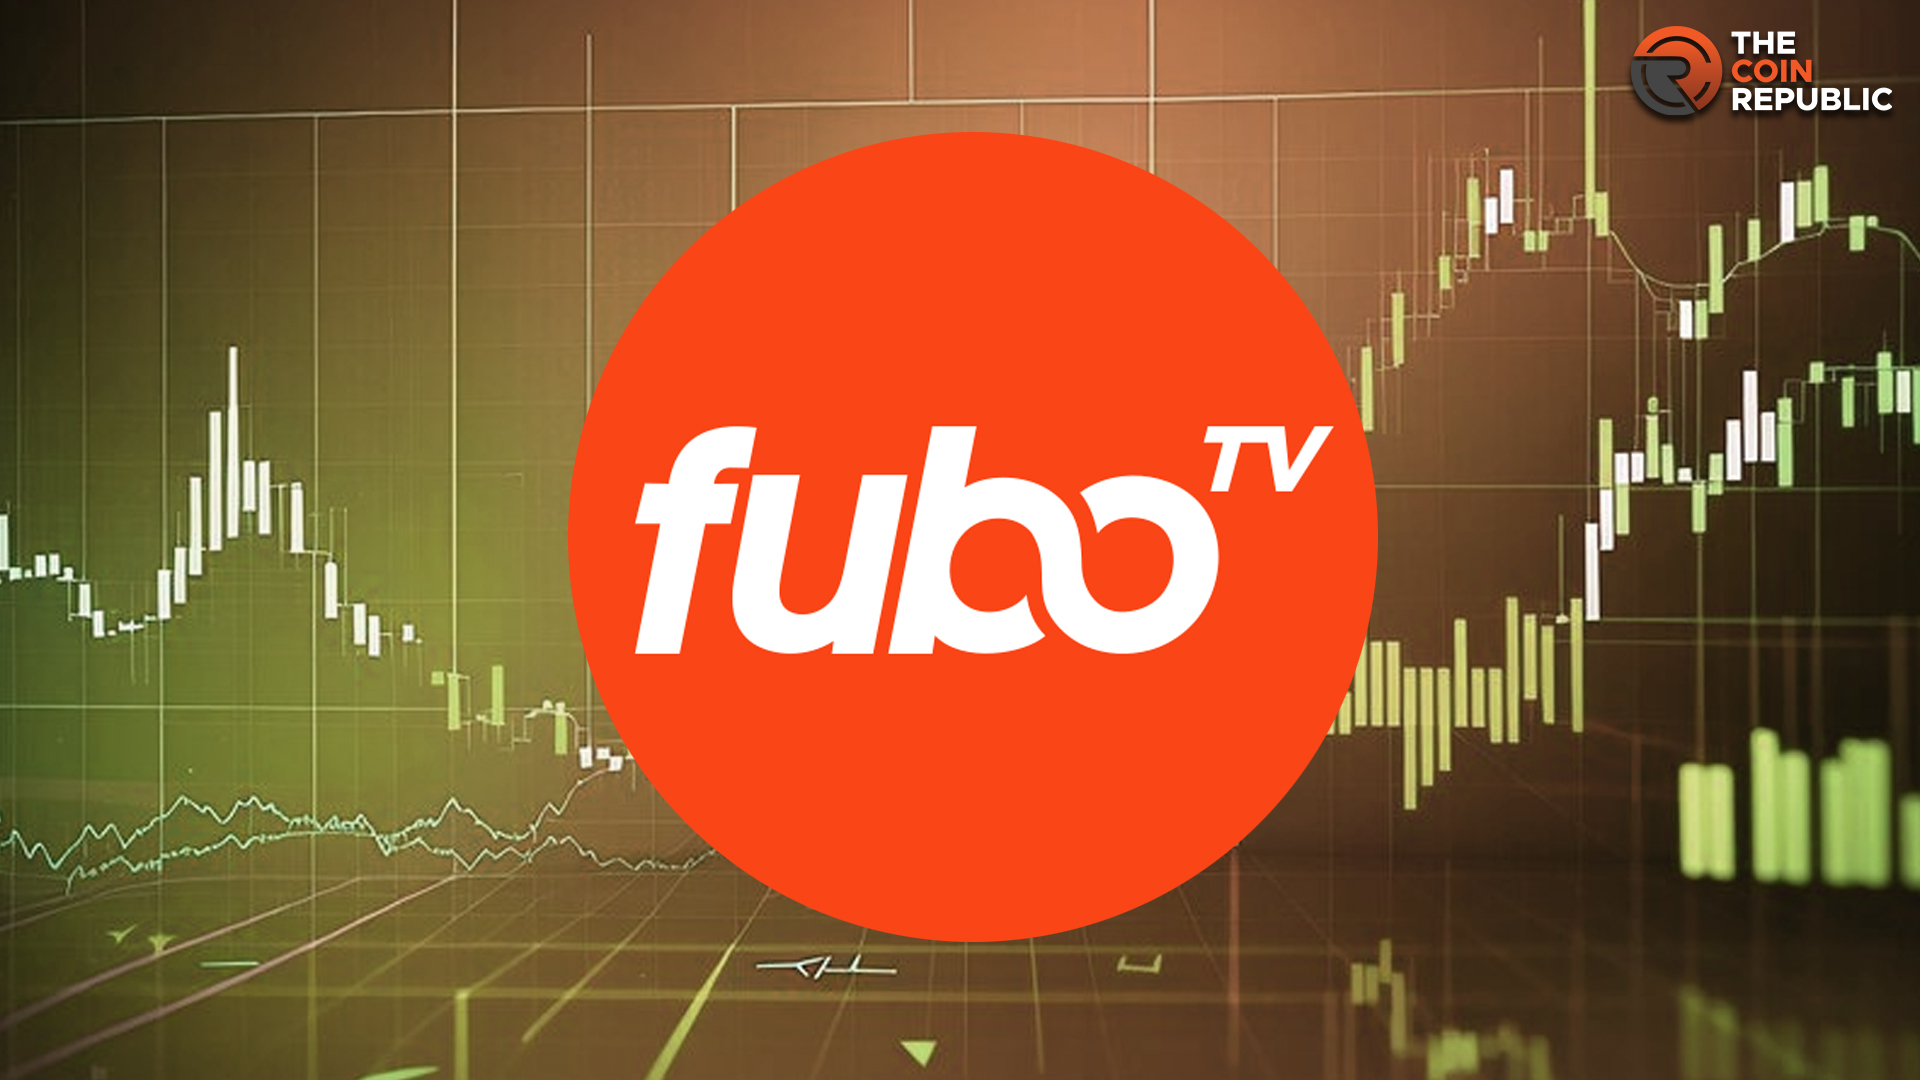 Fubotvの株価は13急騰。 FUBO株は強気に転じているのか？